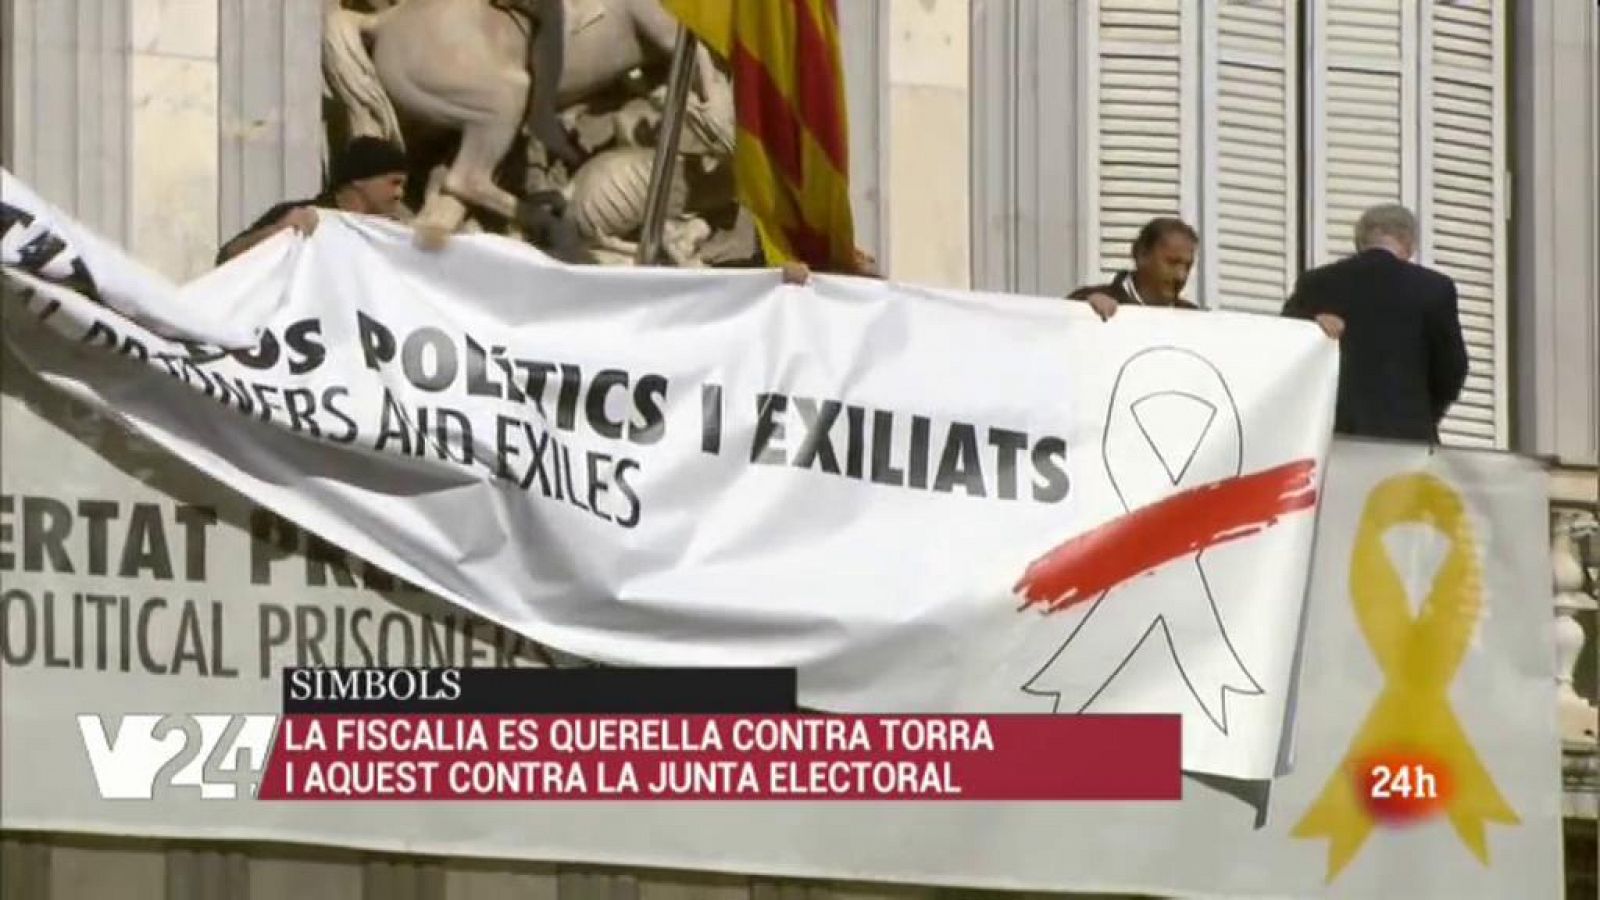 Vídeo sobre l'anàlisi de l'actualitat política a Catalunya. Vespre 24 del 27/03/2019